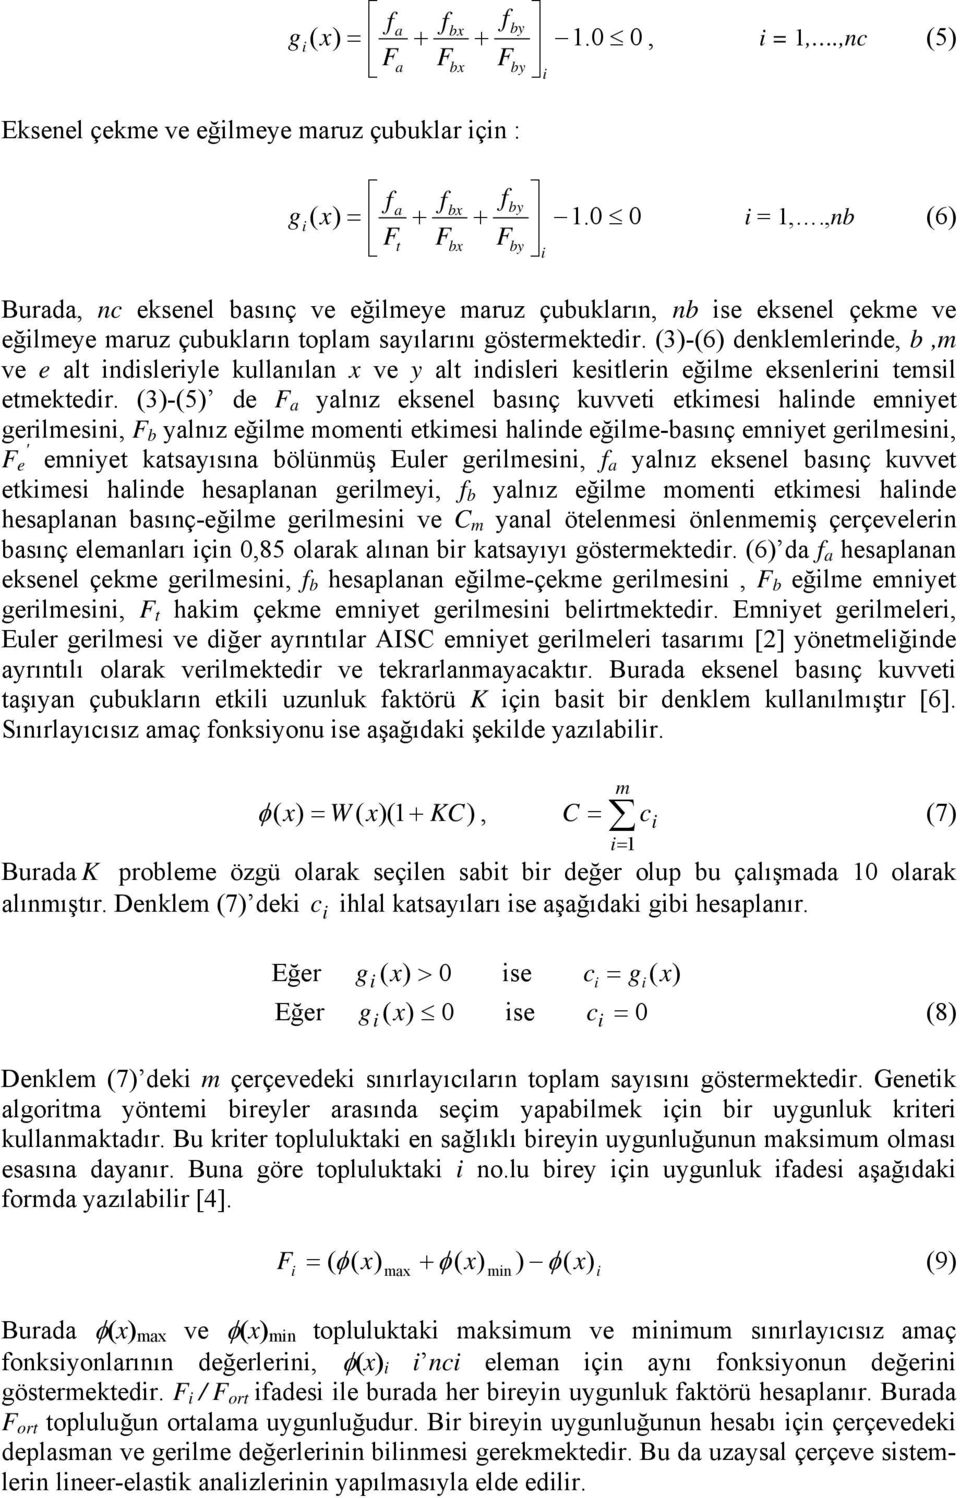 (3)-(6) denklemlernde, b,m ve e alt ndsleryle kullanılan x ve y alt ndsler kestlern eğlme eksenlern temsl etmektedr.